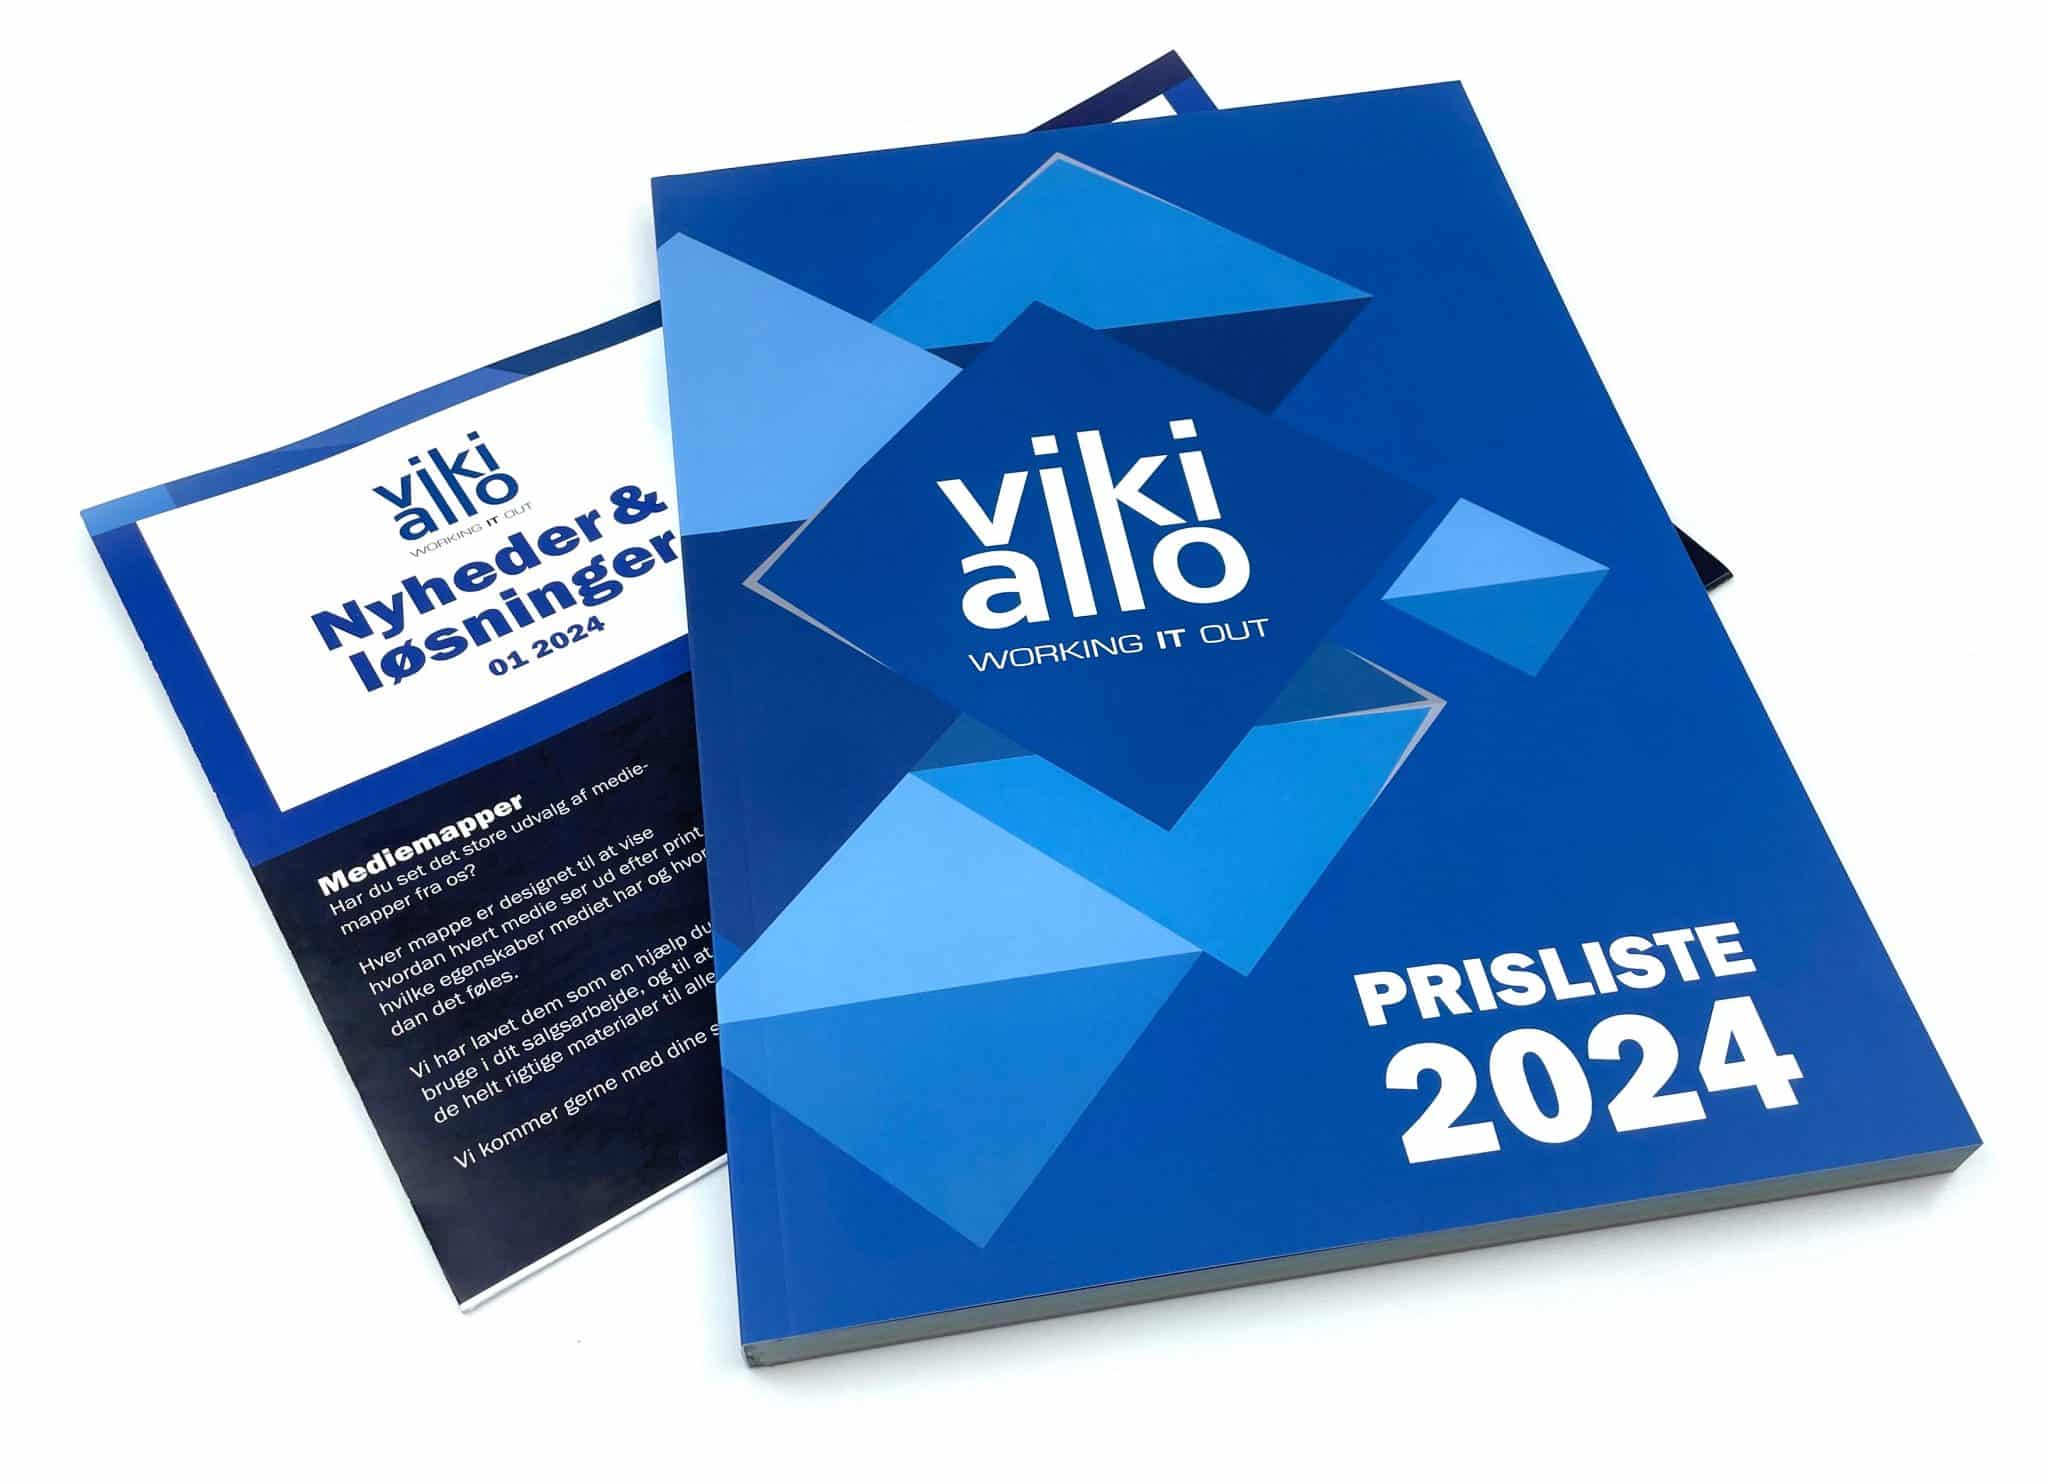 Ny 2024 prisliste og avis fra vikiallo Prisliste 2024 scaled vikiallo